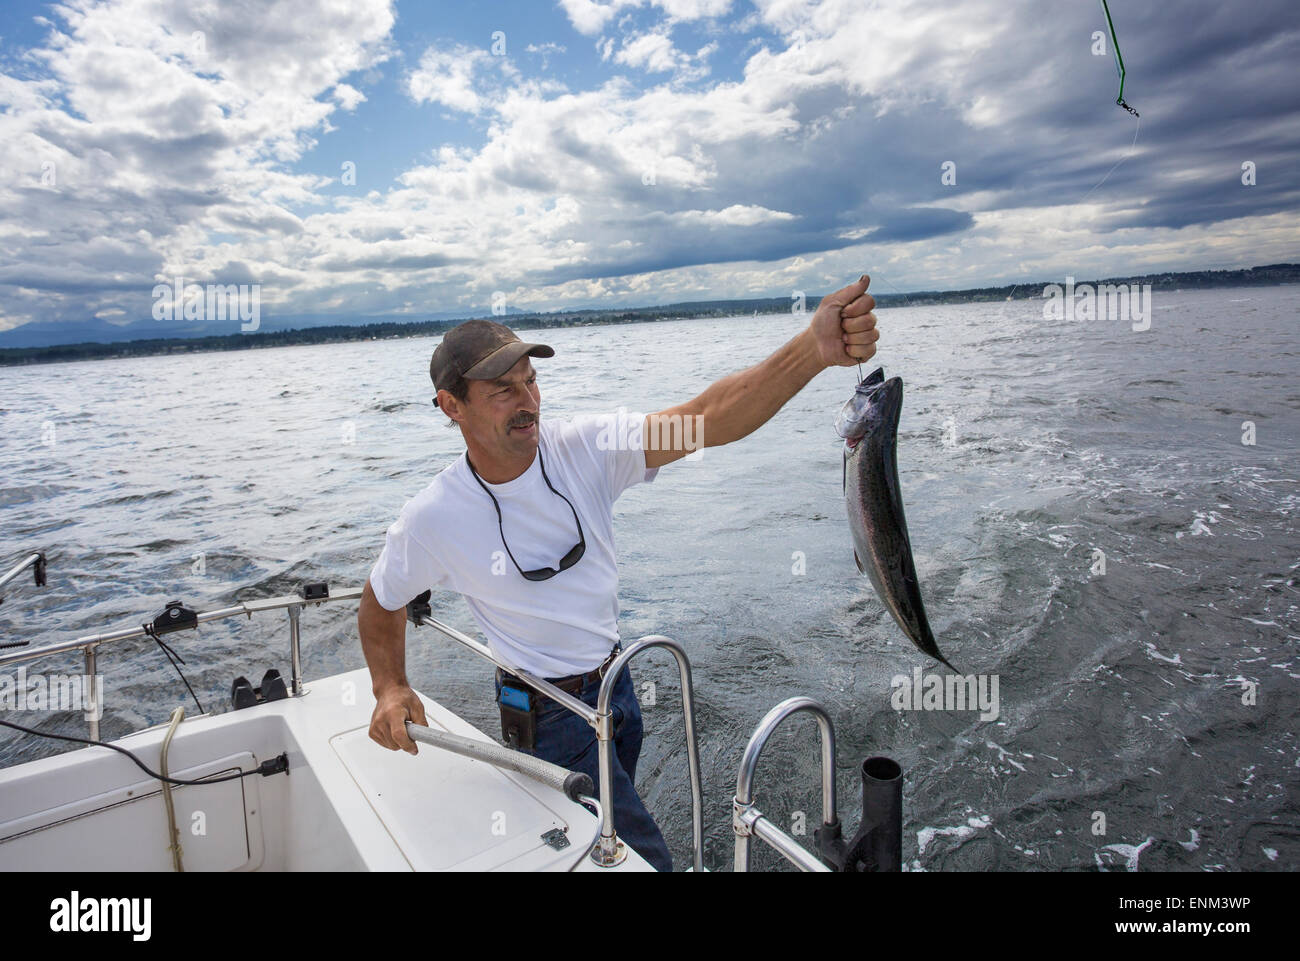 Amérique du Nord, Canada, Colombie-Britannique, île de Vancouver, la pêche au saumon Banque D'Images